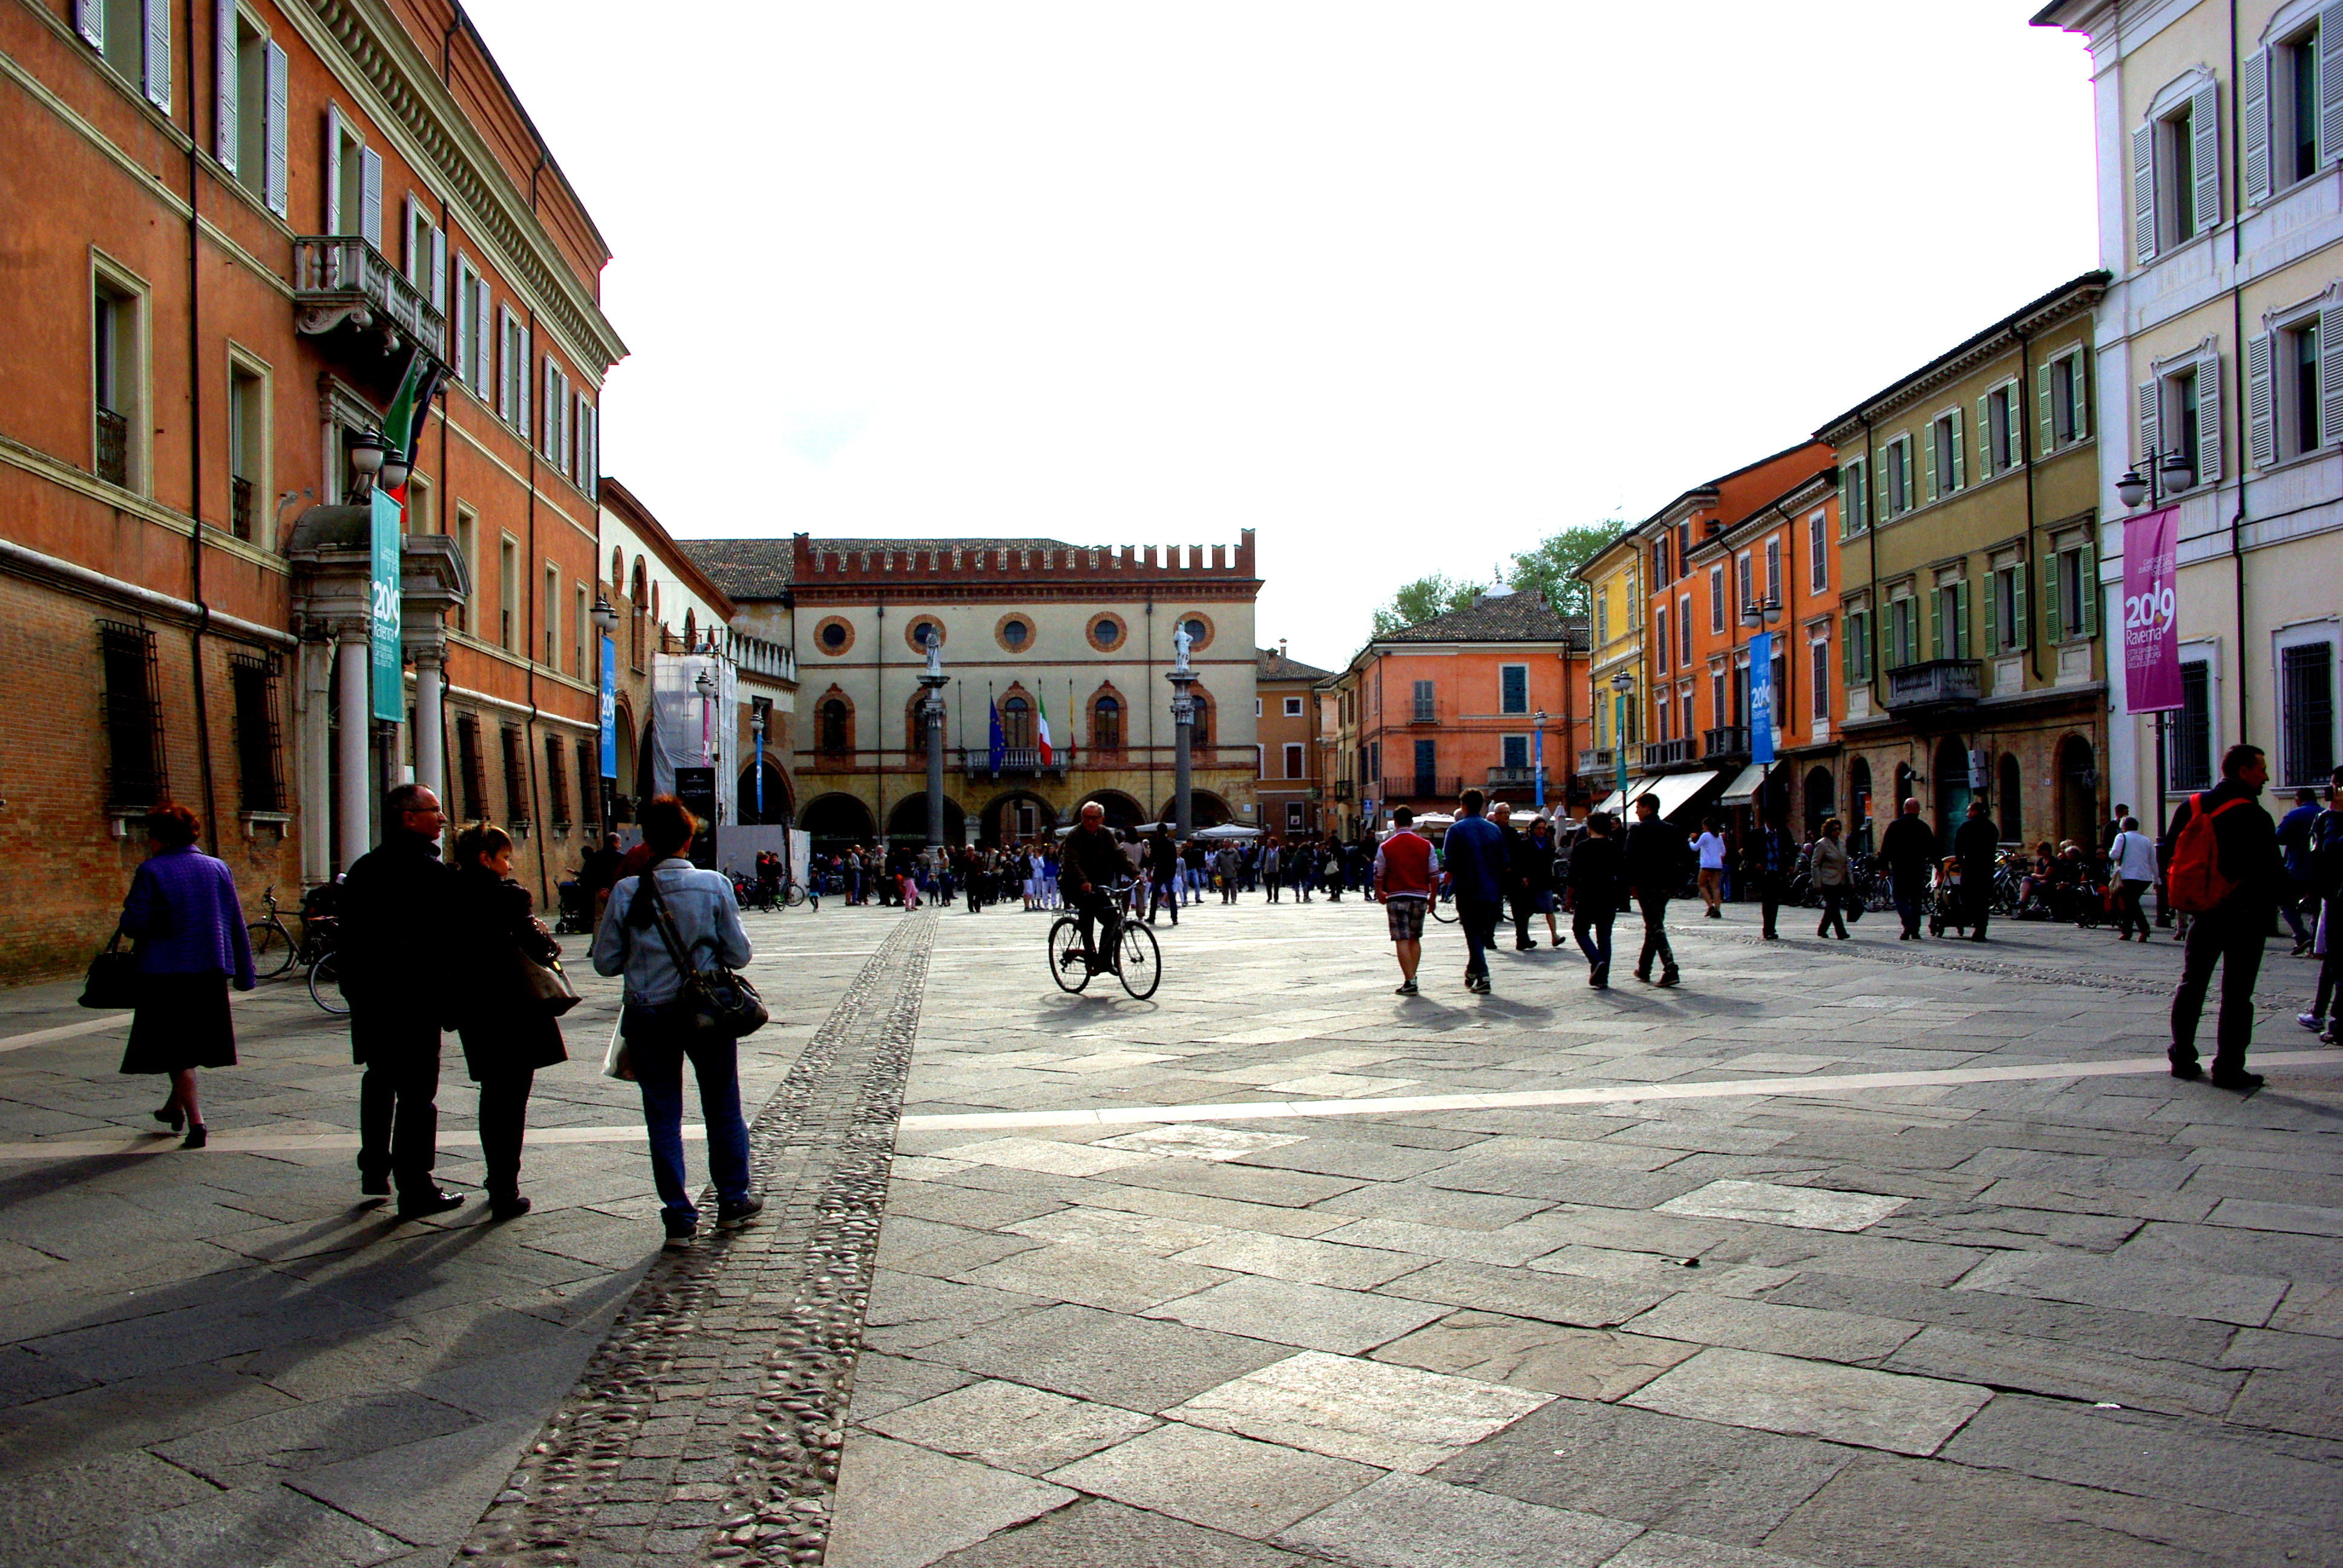 foto: https://upload.wikimedia.org/wikipedia/commons/5/54/Campo_lungo_su_piazza_del_Popolo.JPG